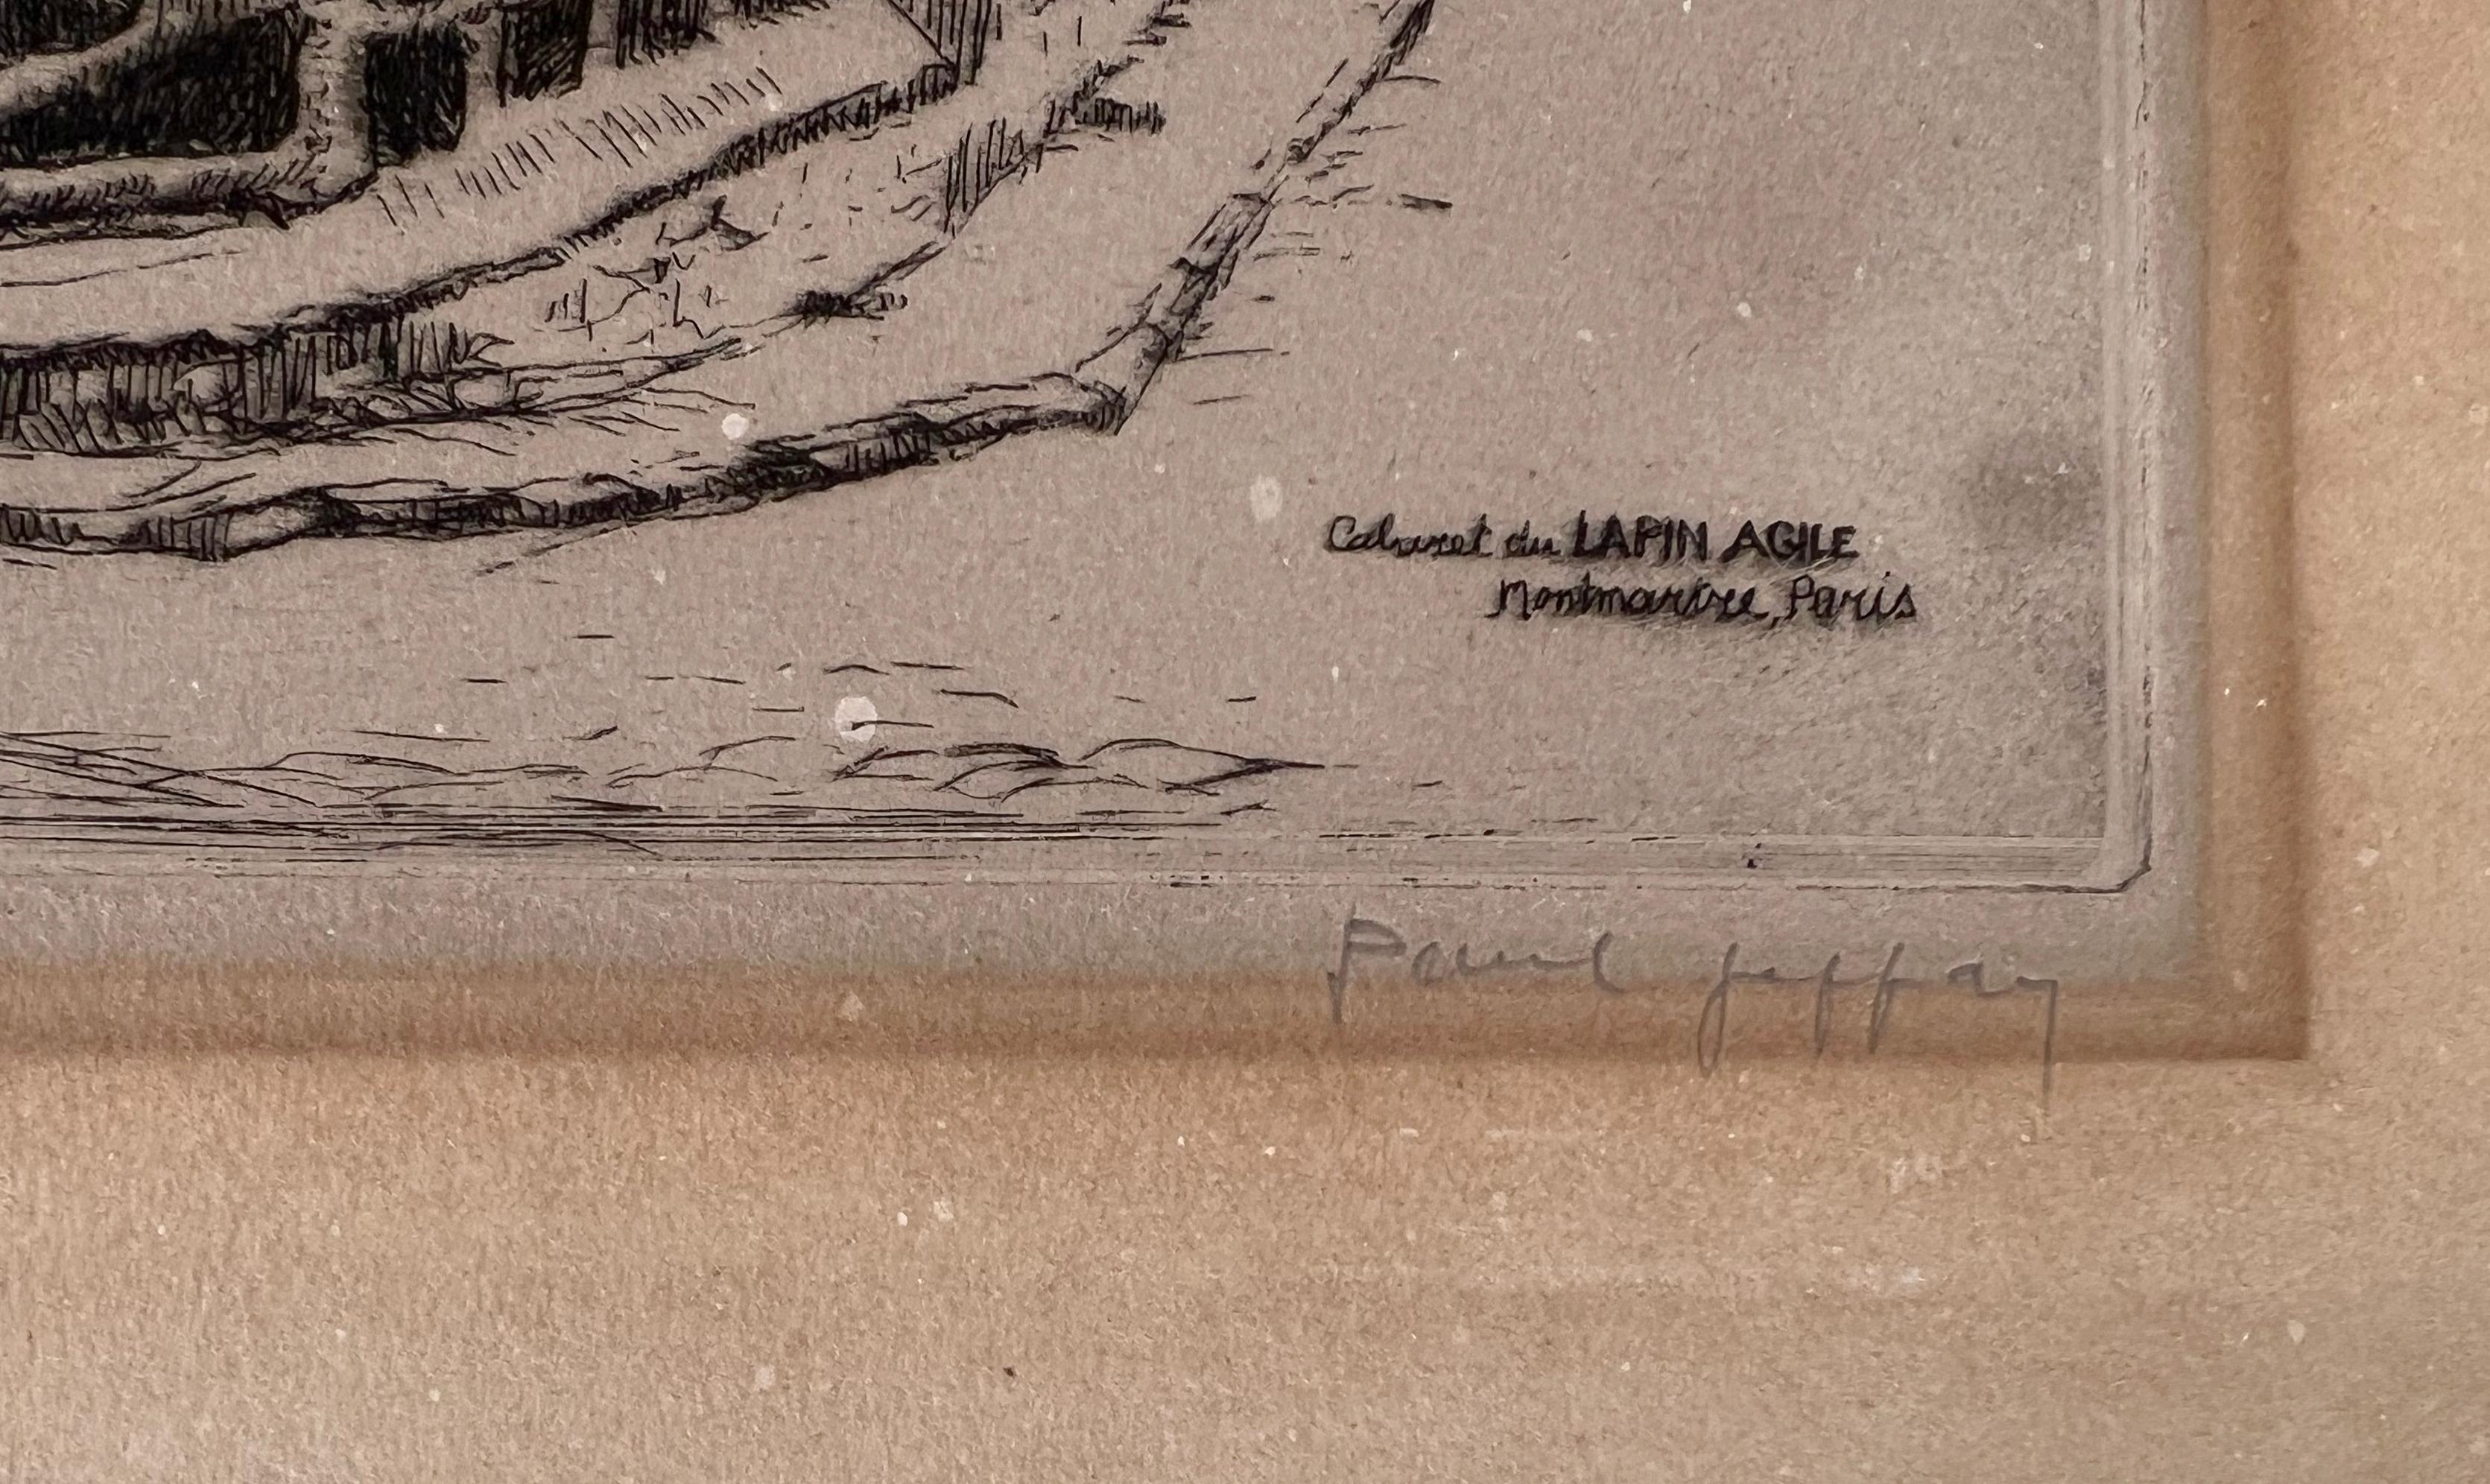 Caberet du Lapin Agile, Montmartre, Paris 1920  1